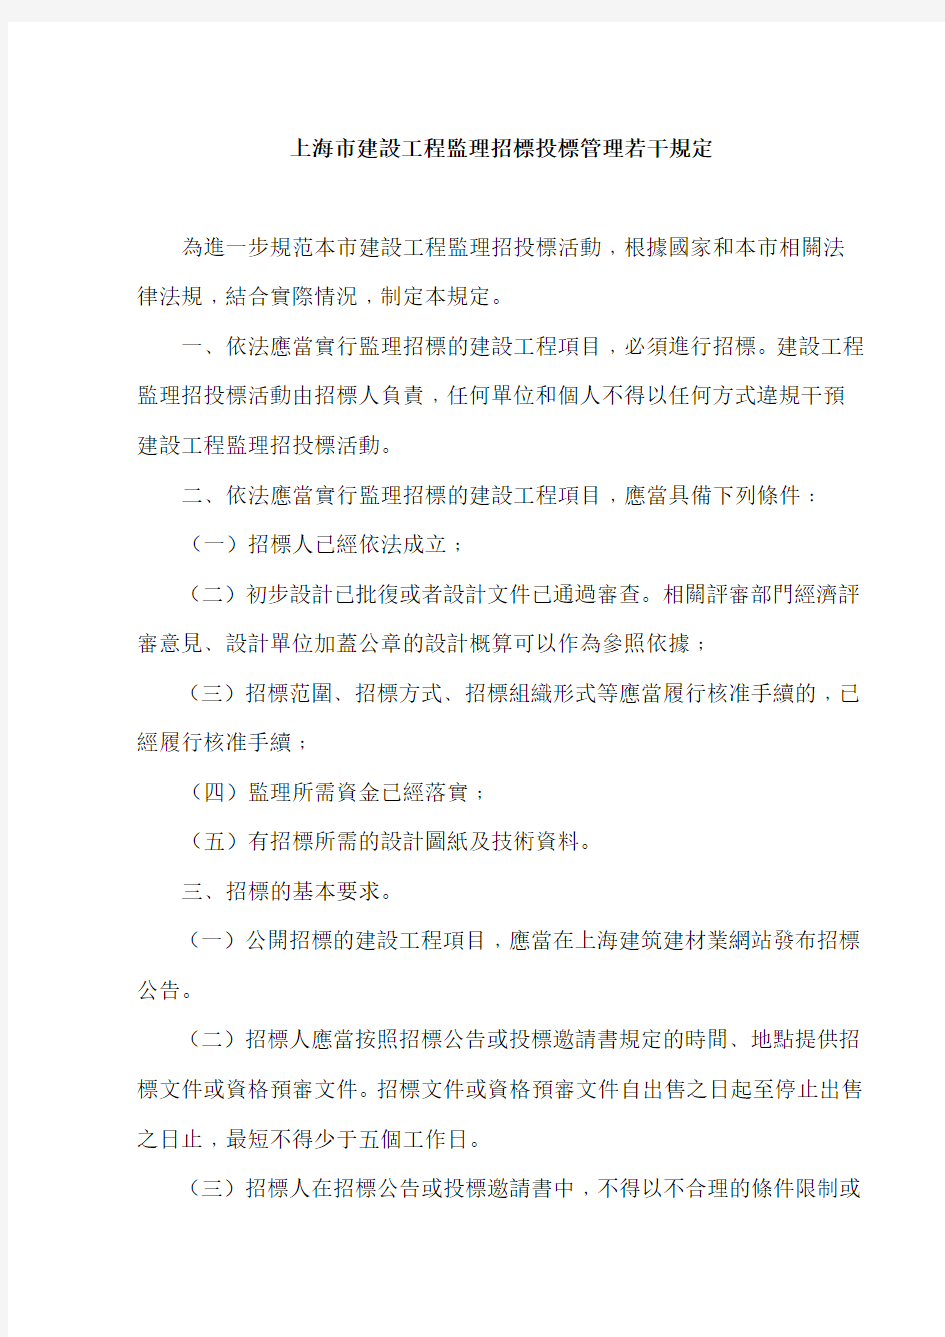 上海市建设工程监理招标投标管理若干规定